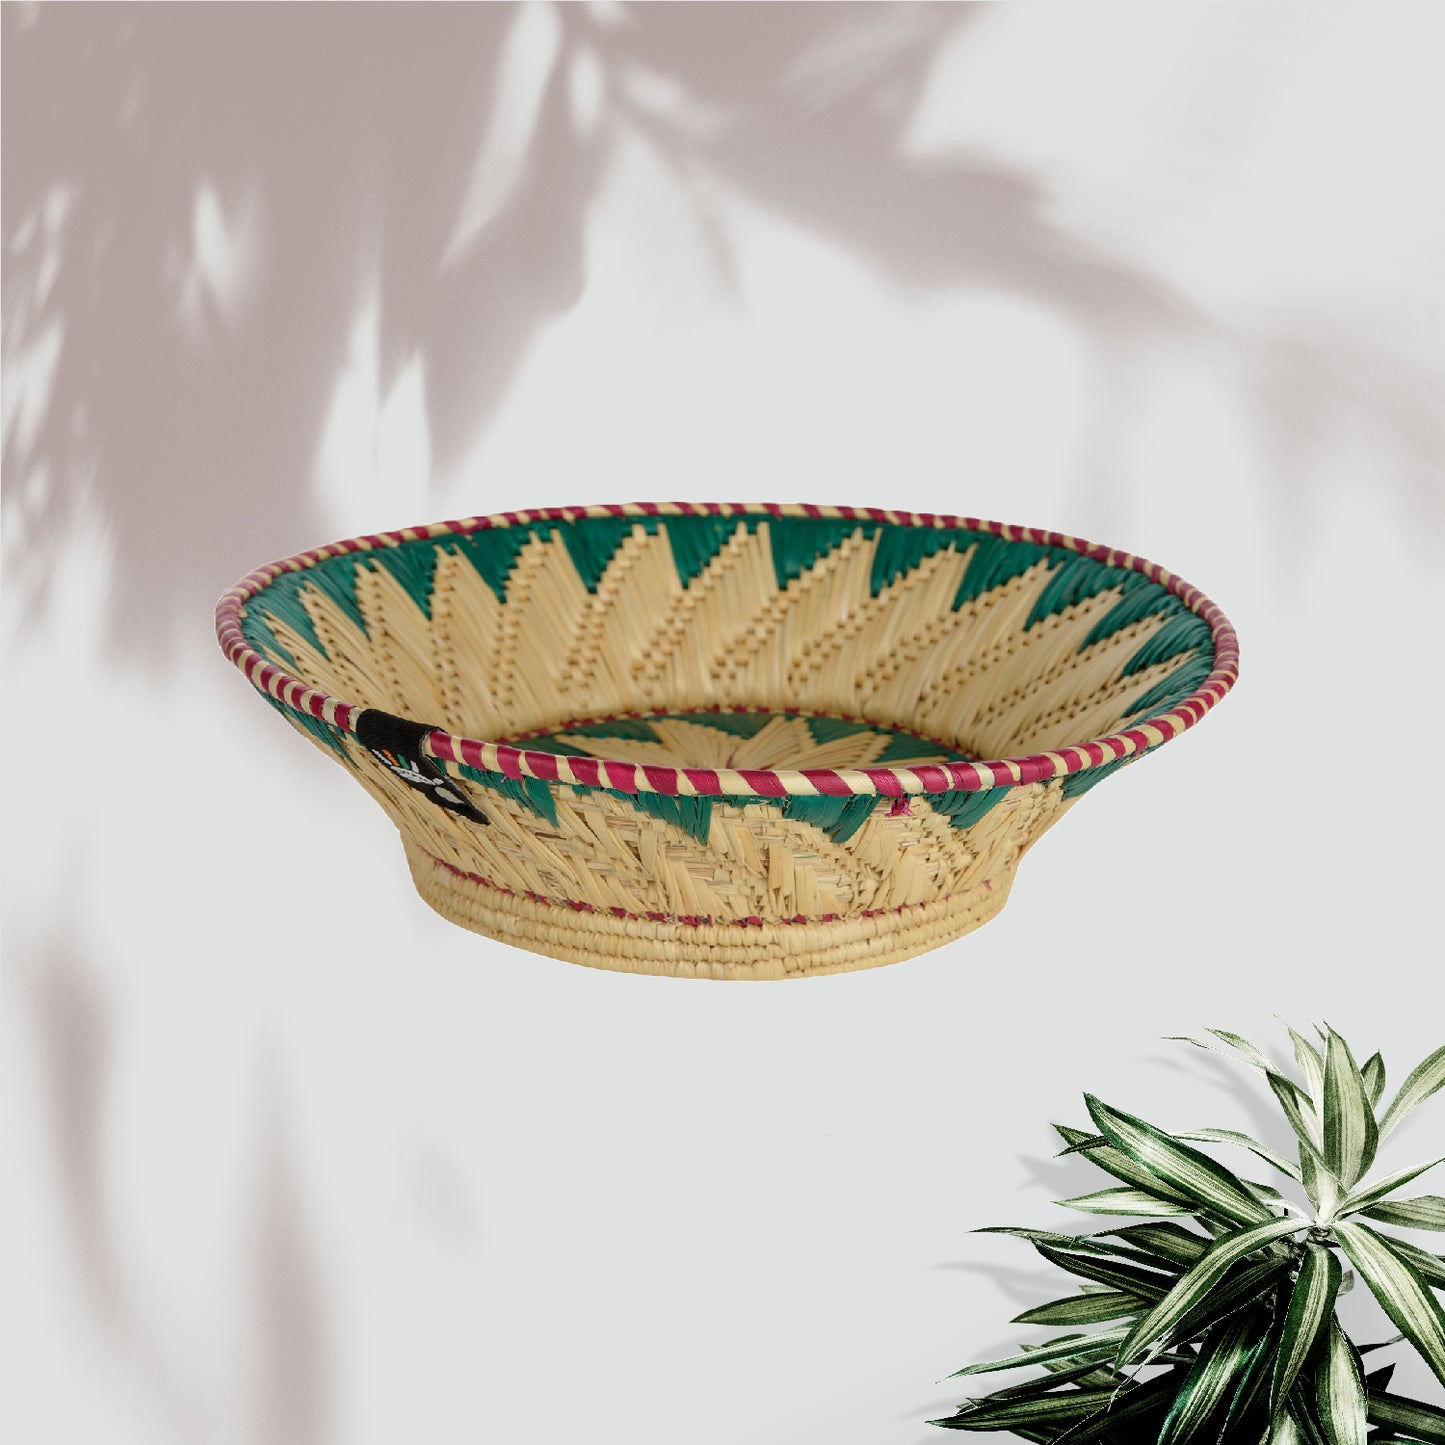 Happy Cultures 'Green' Floral Moonj Basket